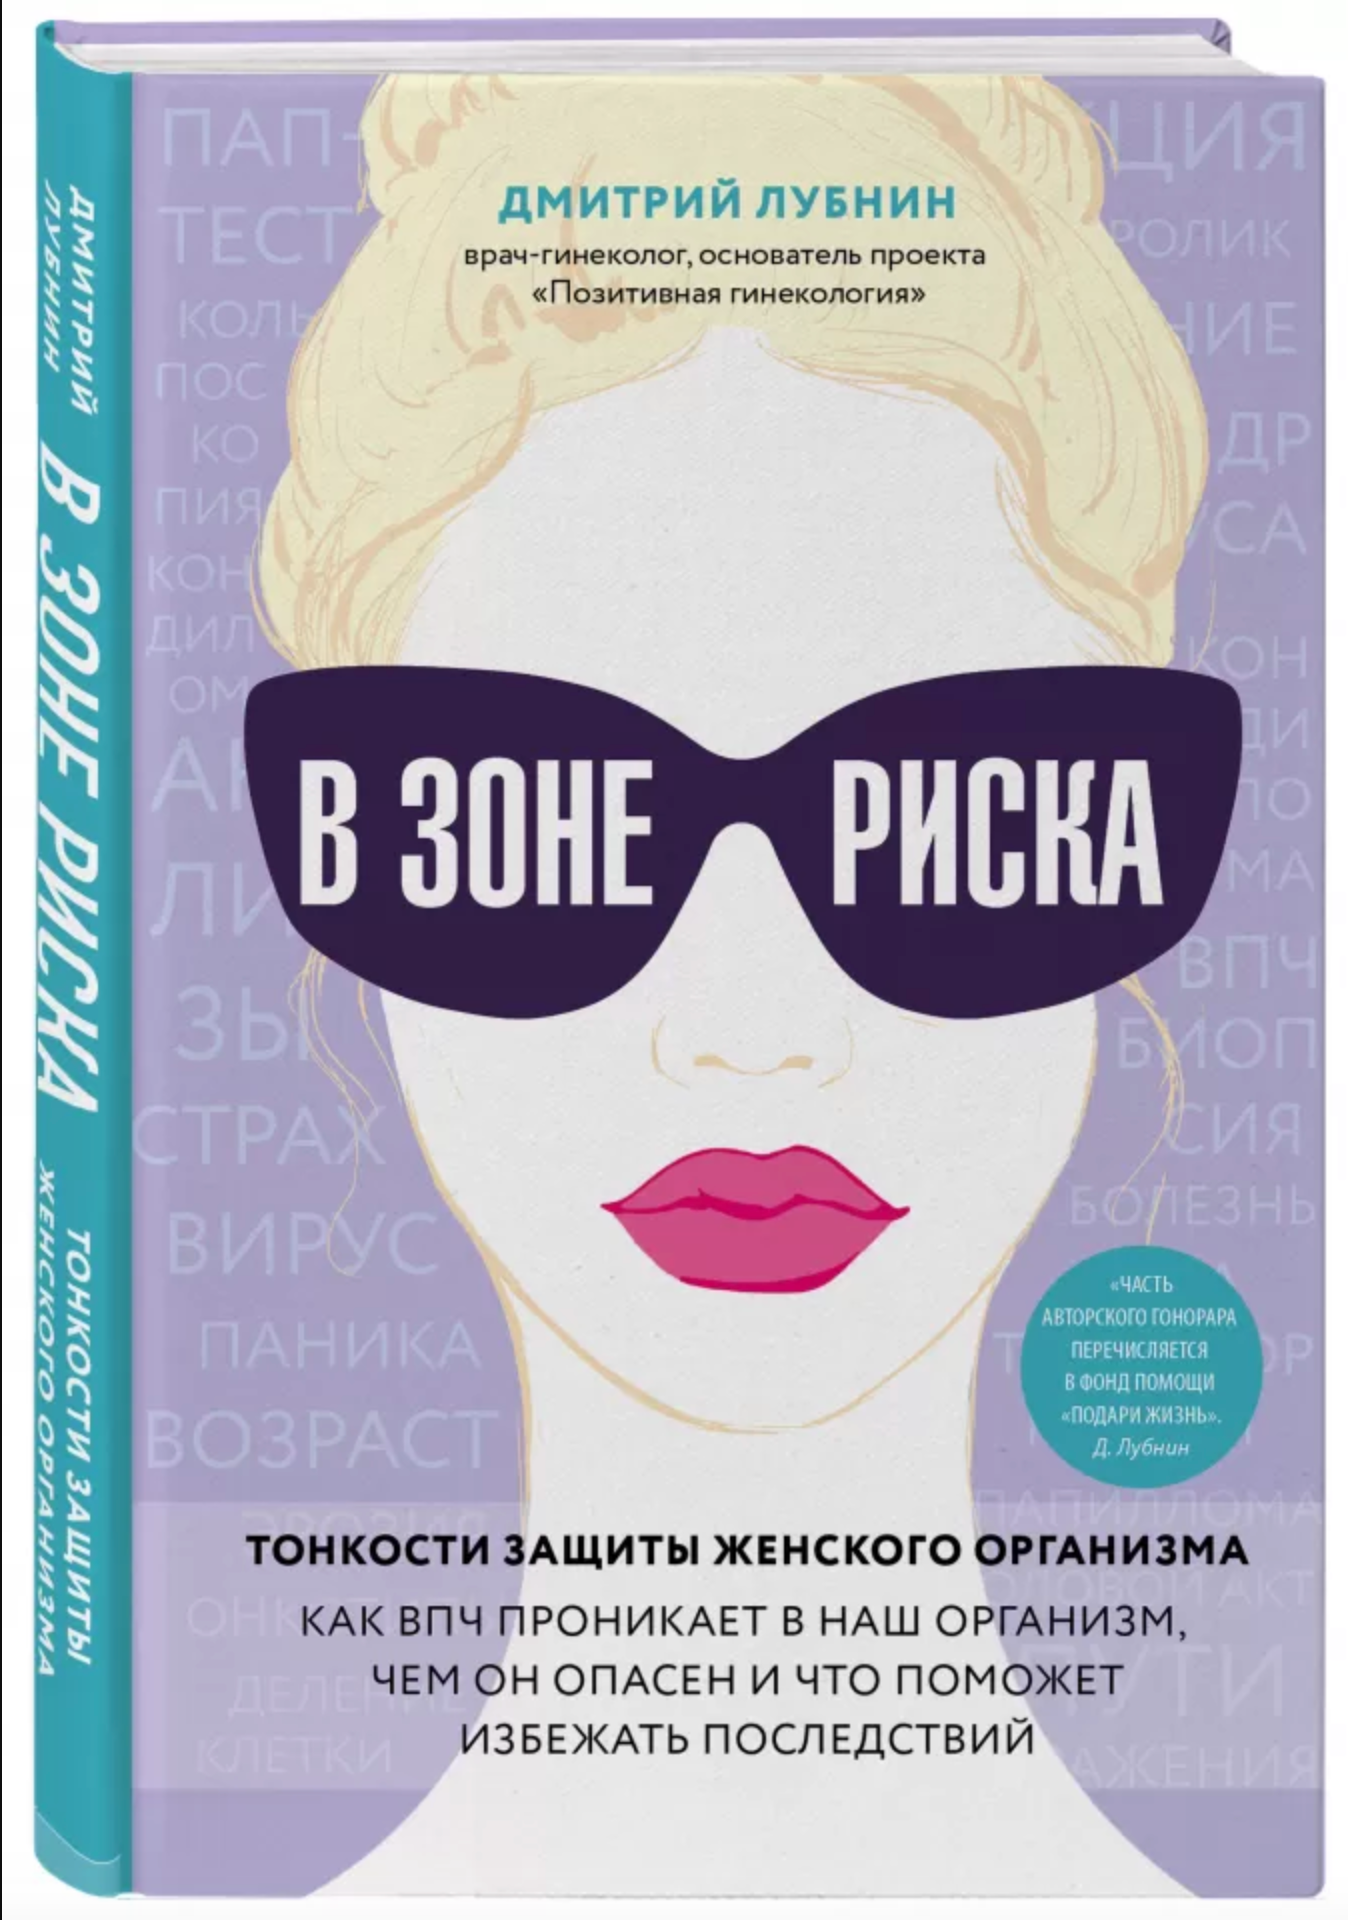 Отрывок из книги популярного гинеколога России о ВПЧ и раке шейки матки